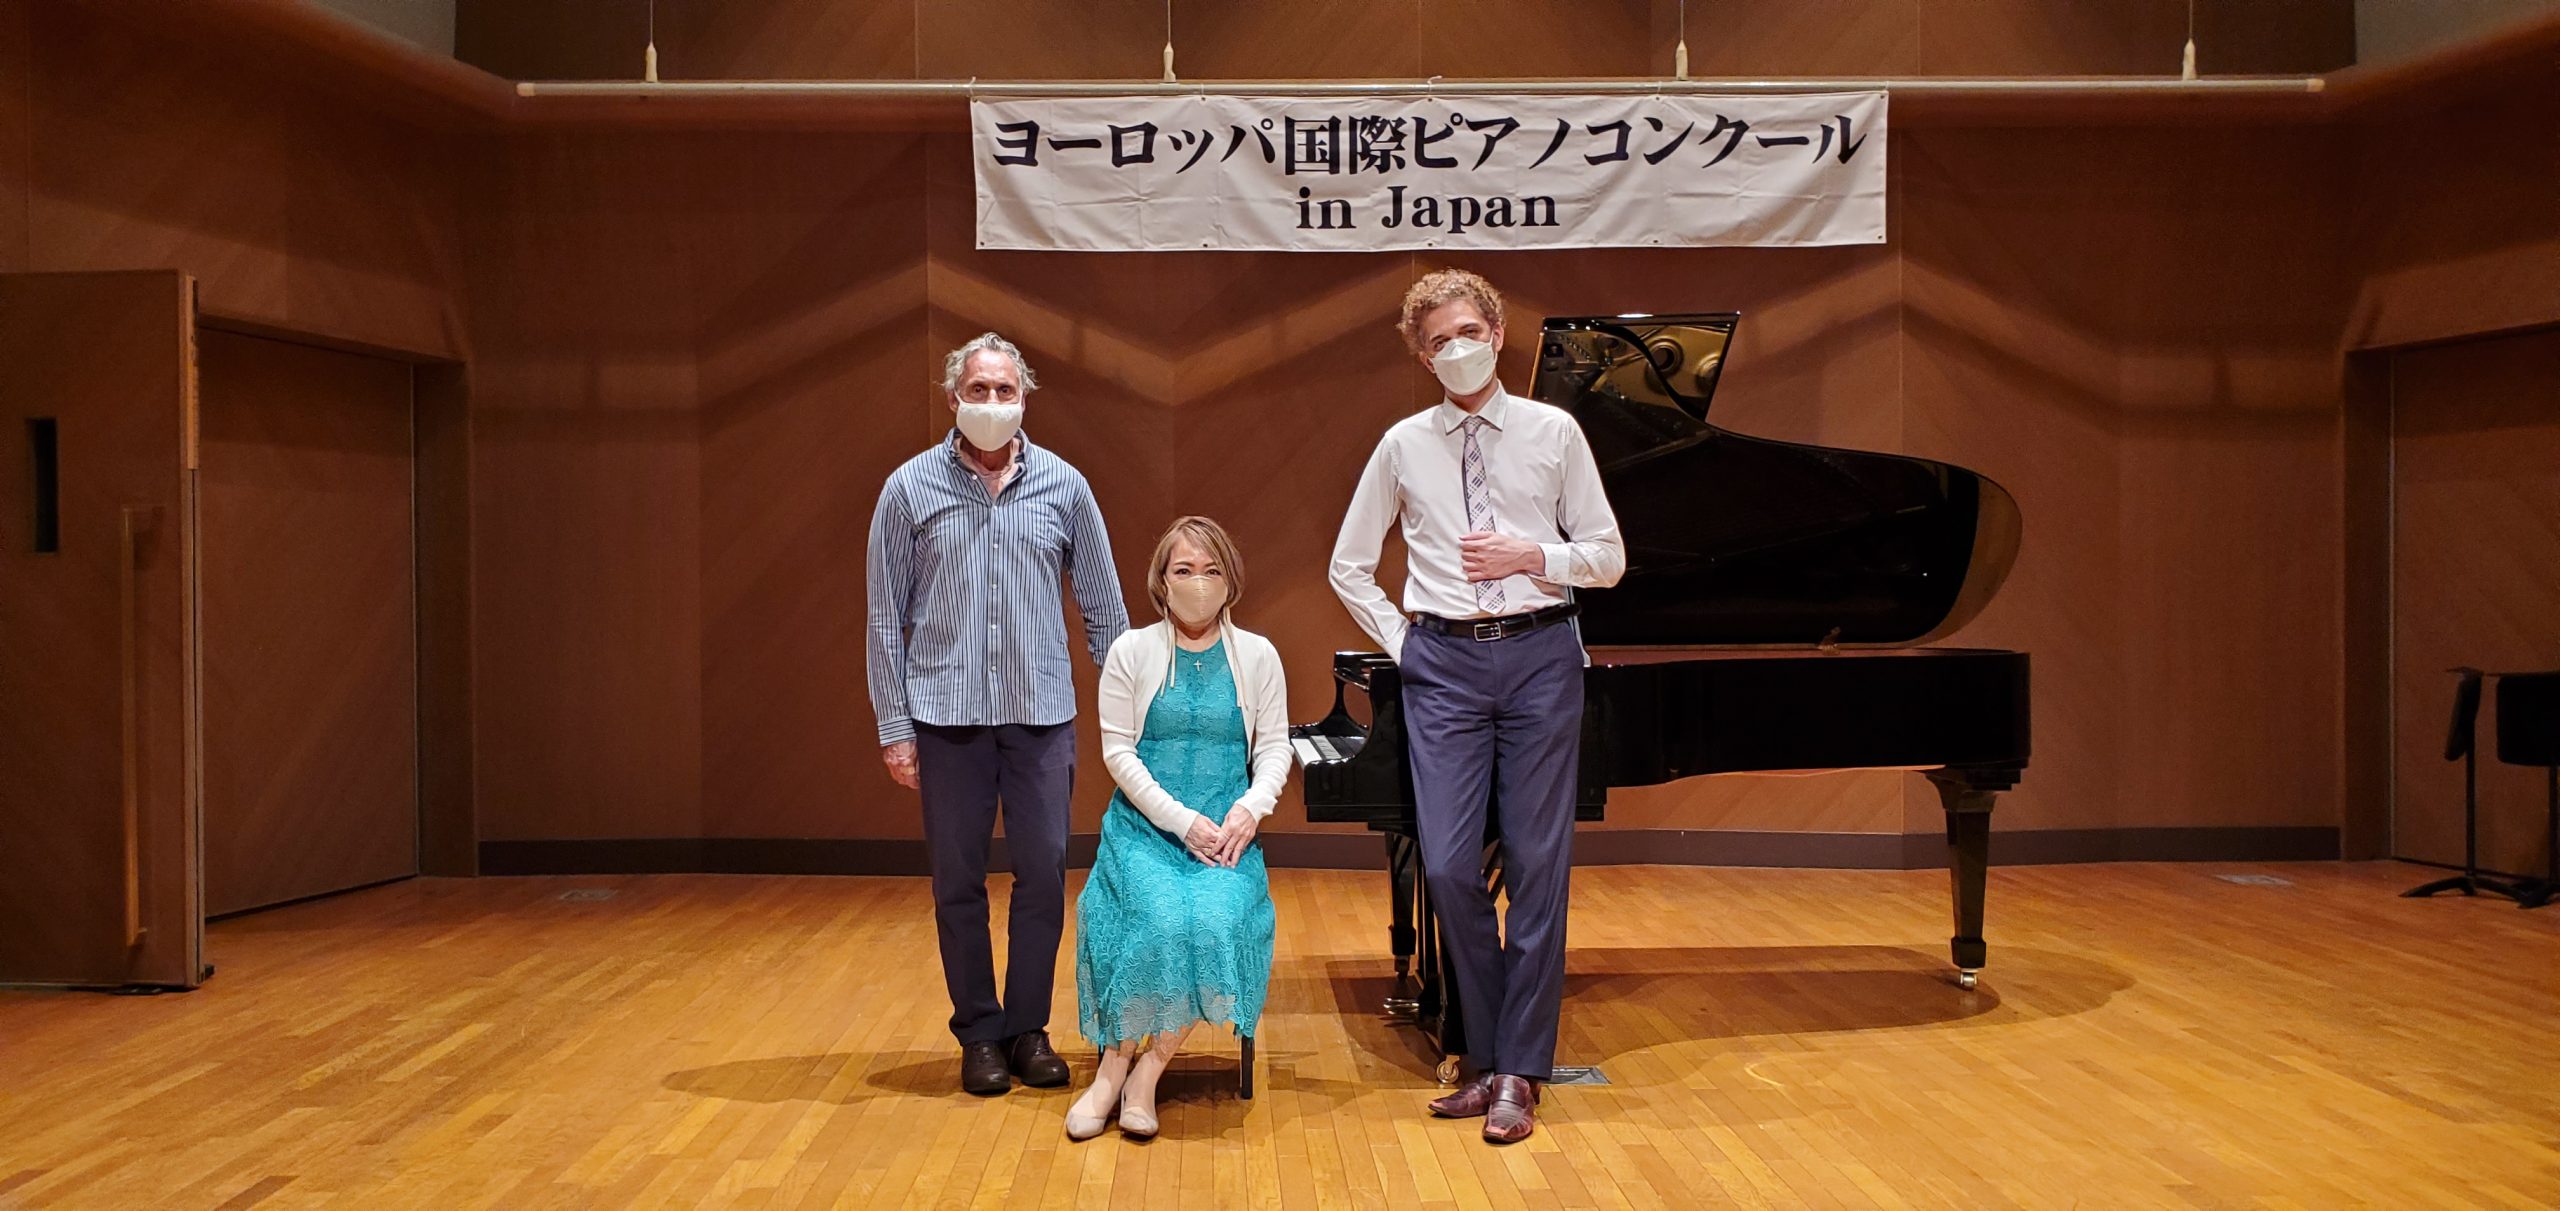 第12回ヨーロッパ国際ピアノコンクールin Japan 大阪地区予選